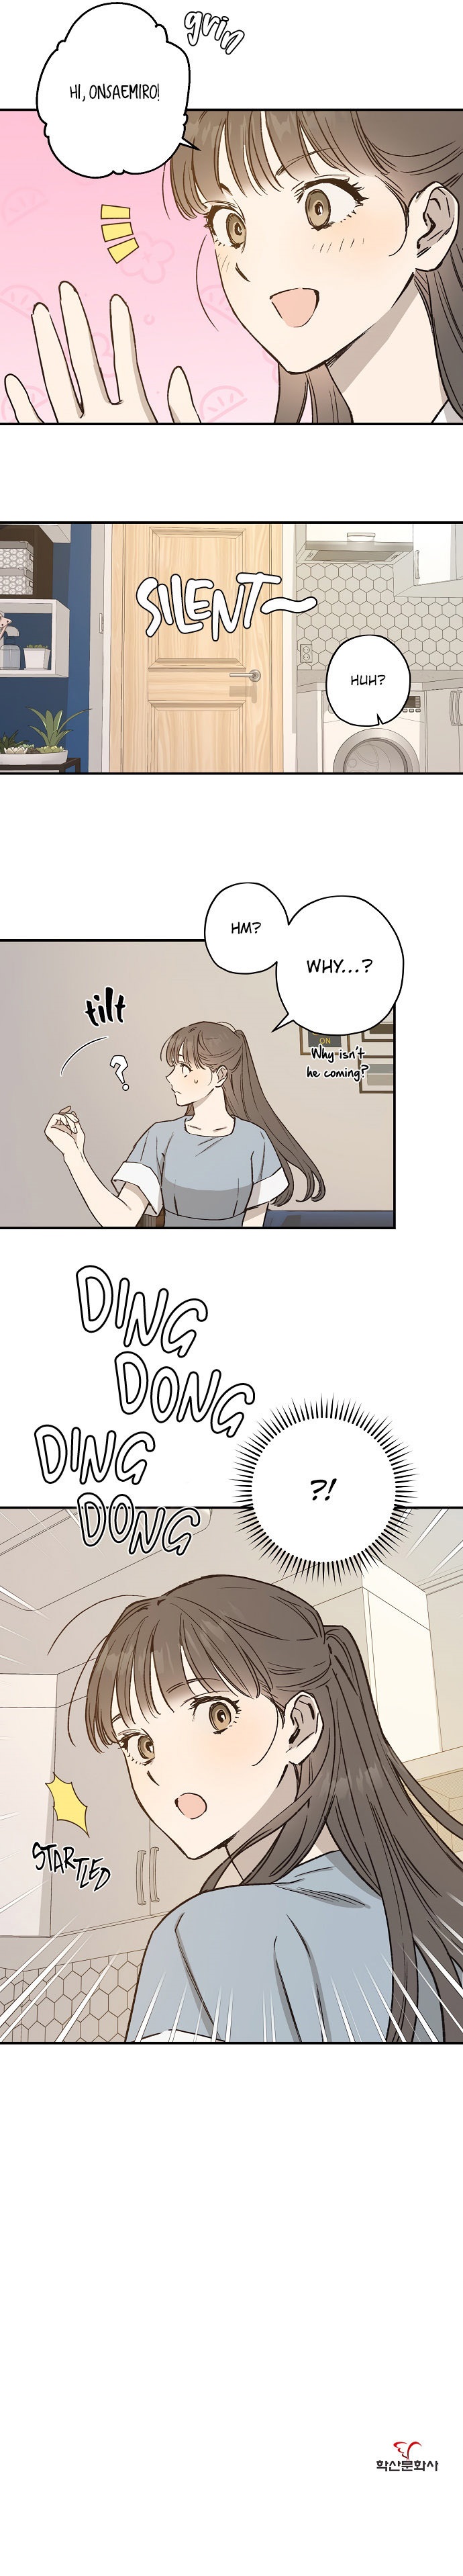 Onsaemiro - Chapter 26 Page 14